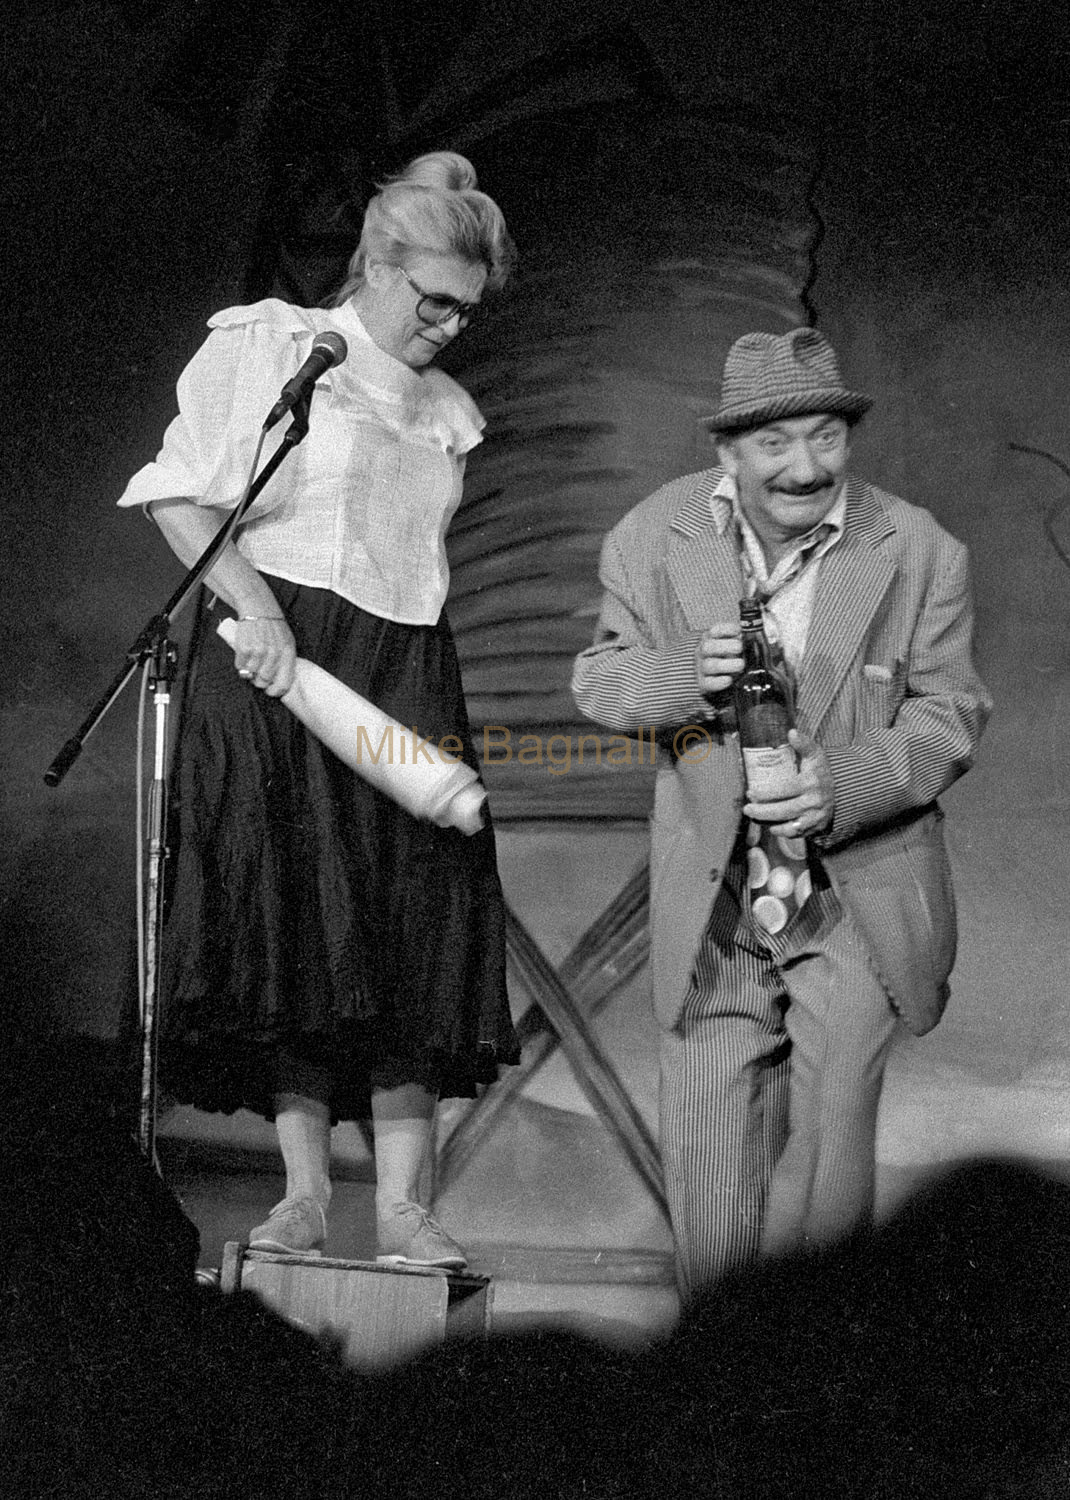 03_Slim_Dusty_Show_Regent Theatre_Richmond_43-Patti Brittain, Syd Heylen, On Stage,